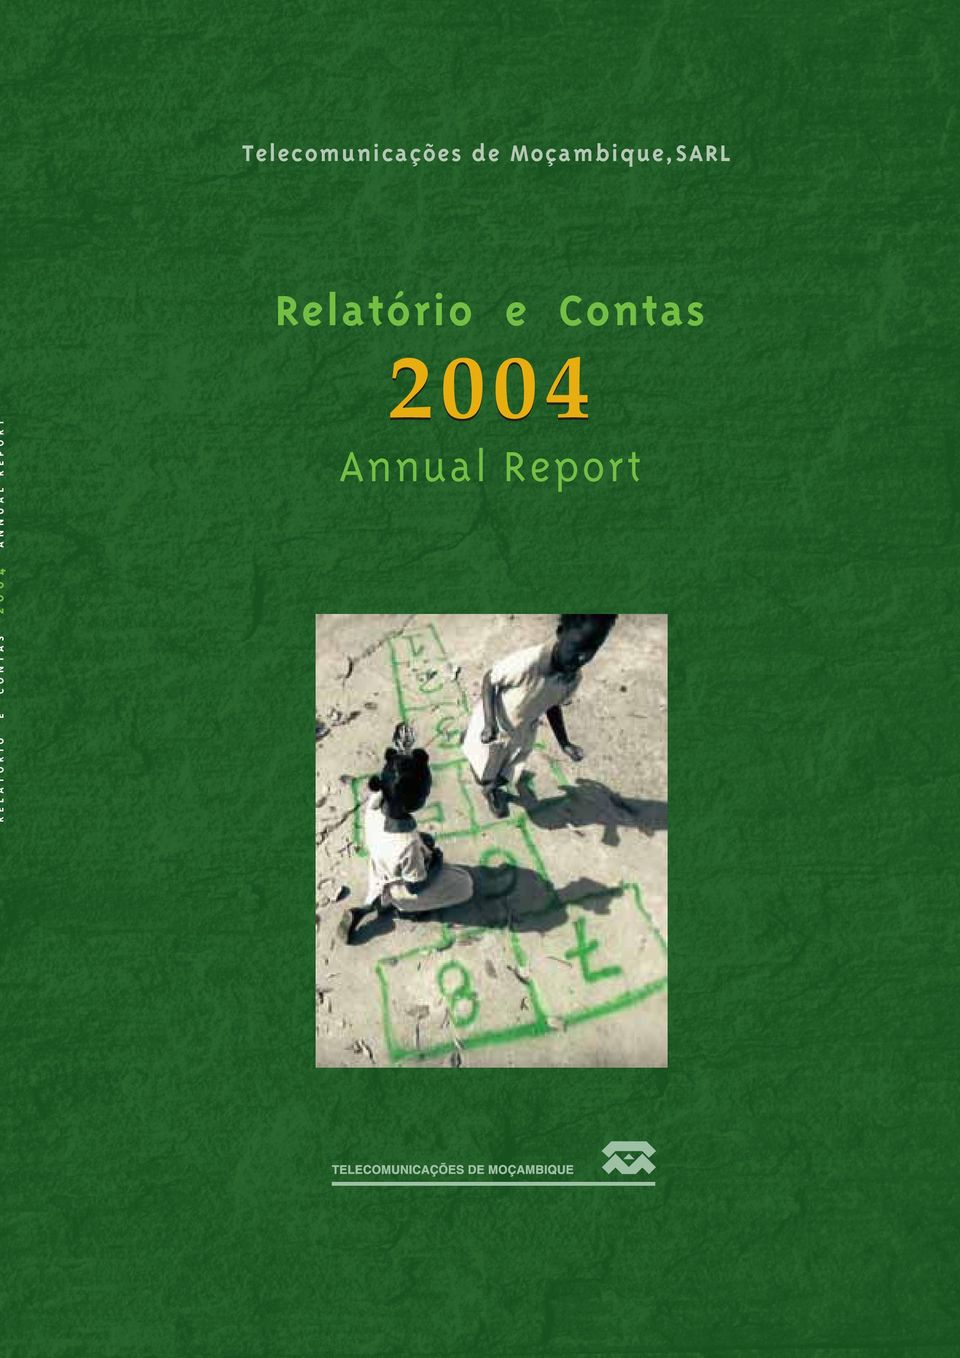 CONTAS 2004 ANNUAL REPORT